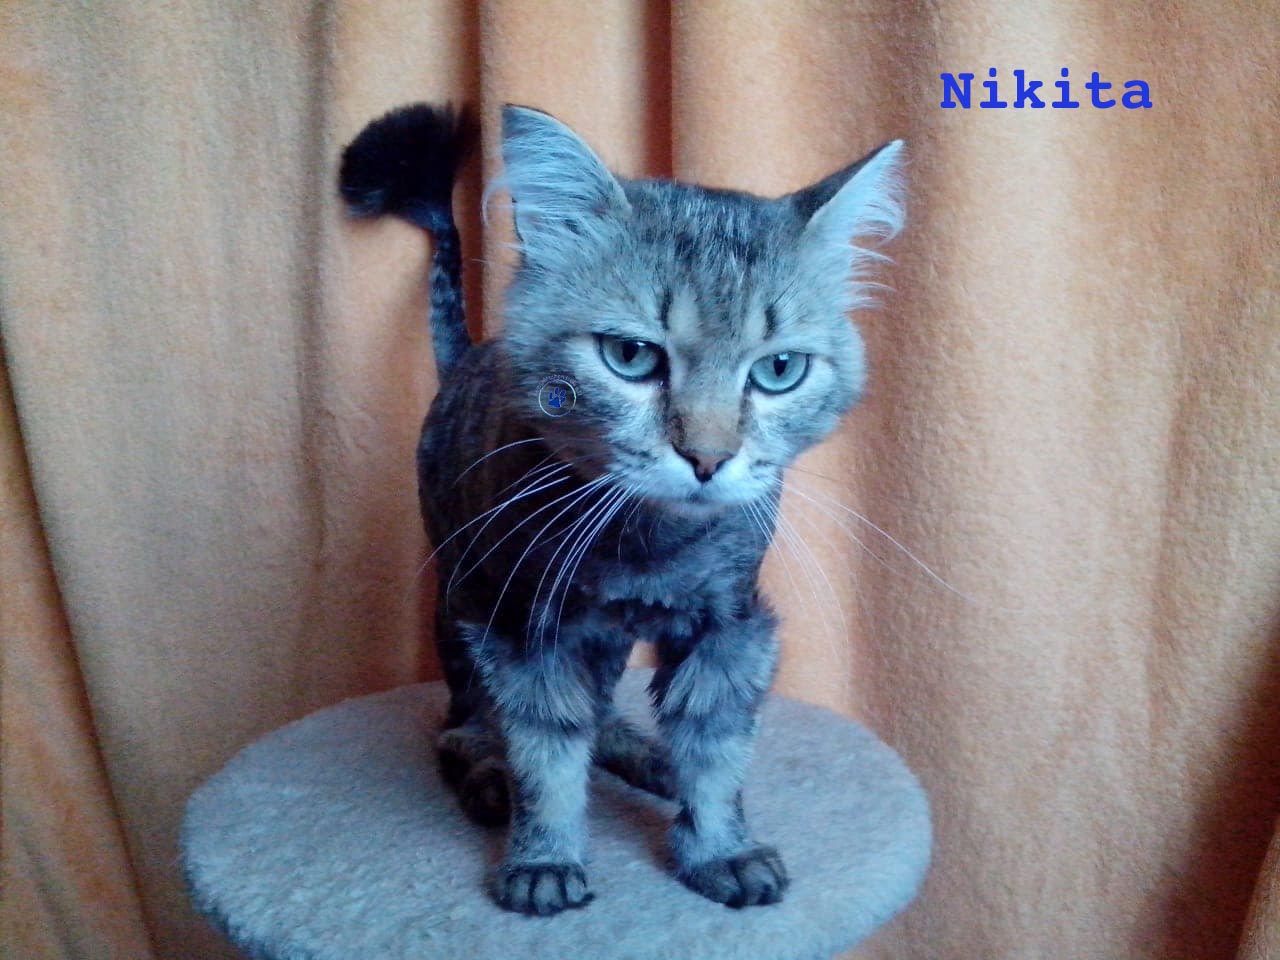 Nikolai/Katzen/Nikita/Nikita12mW.jpg